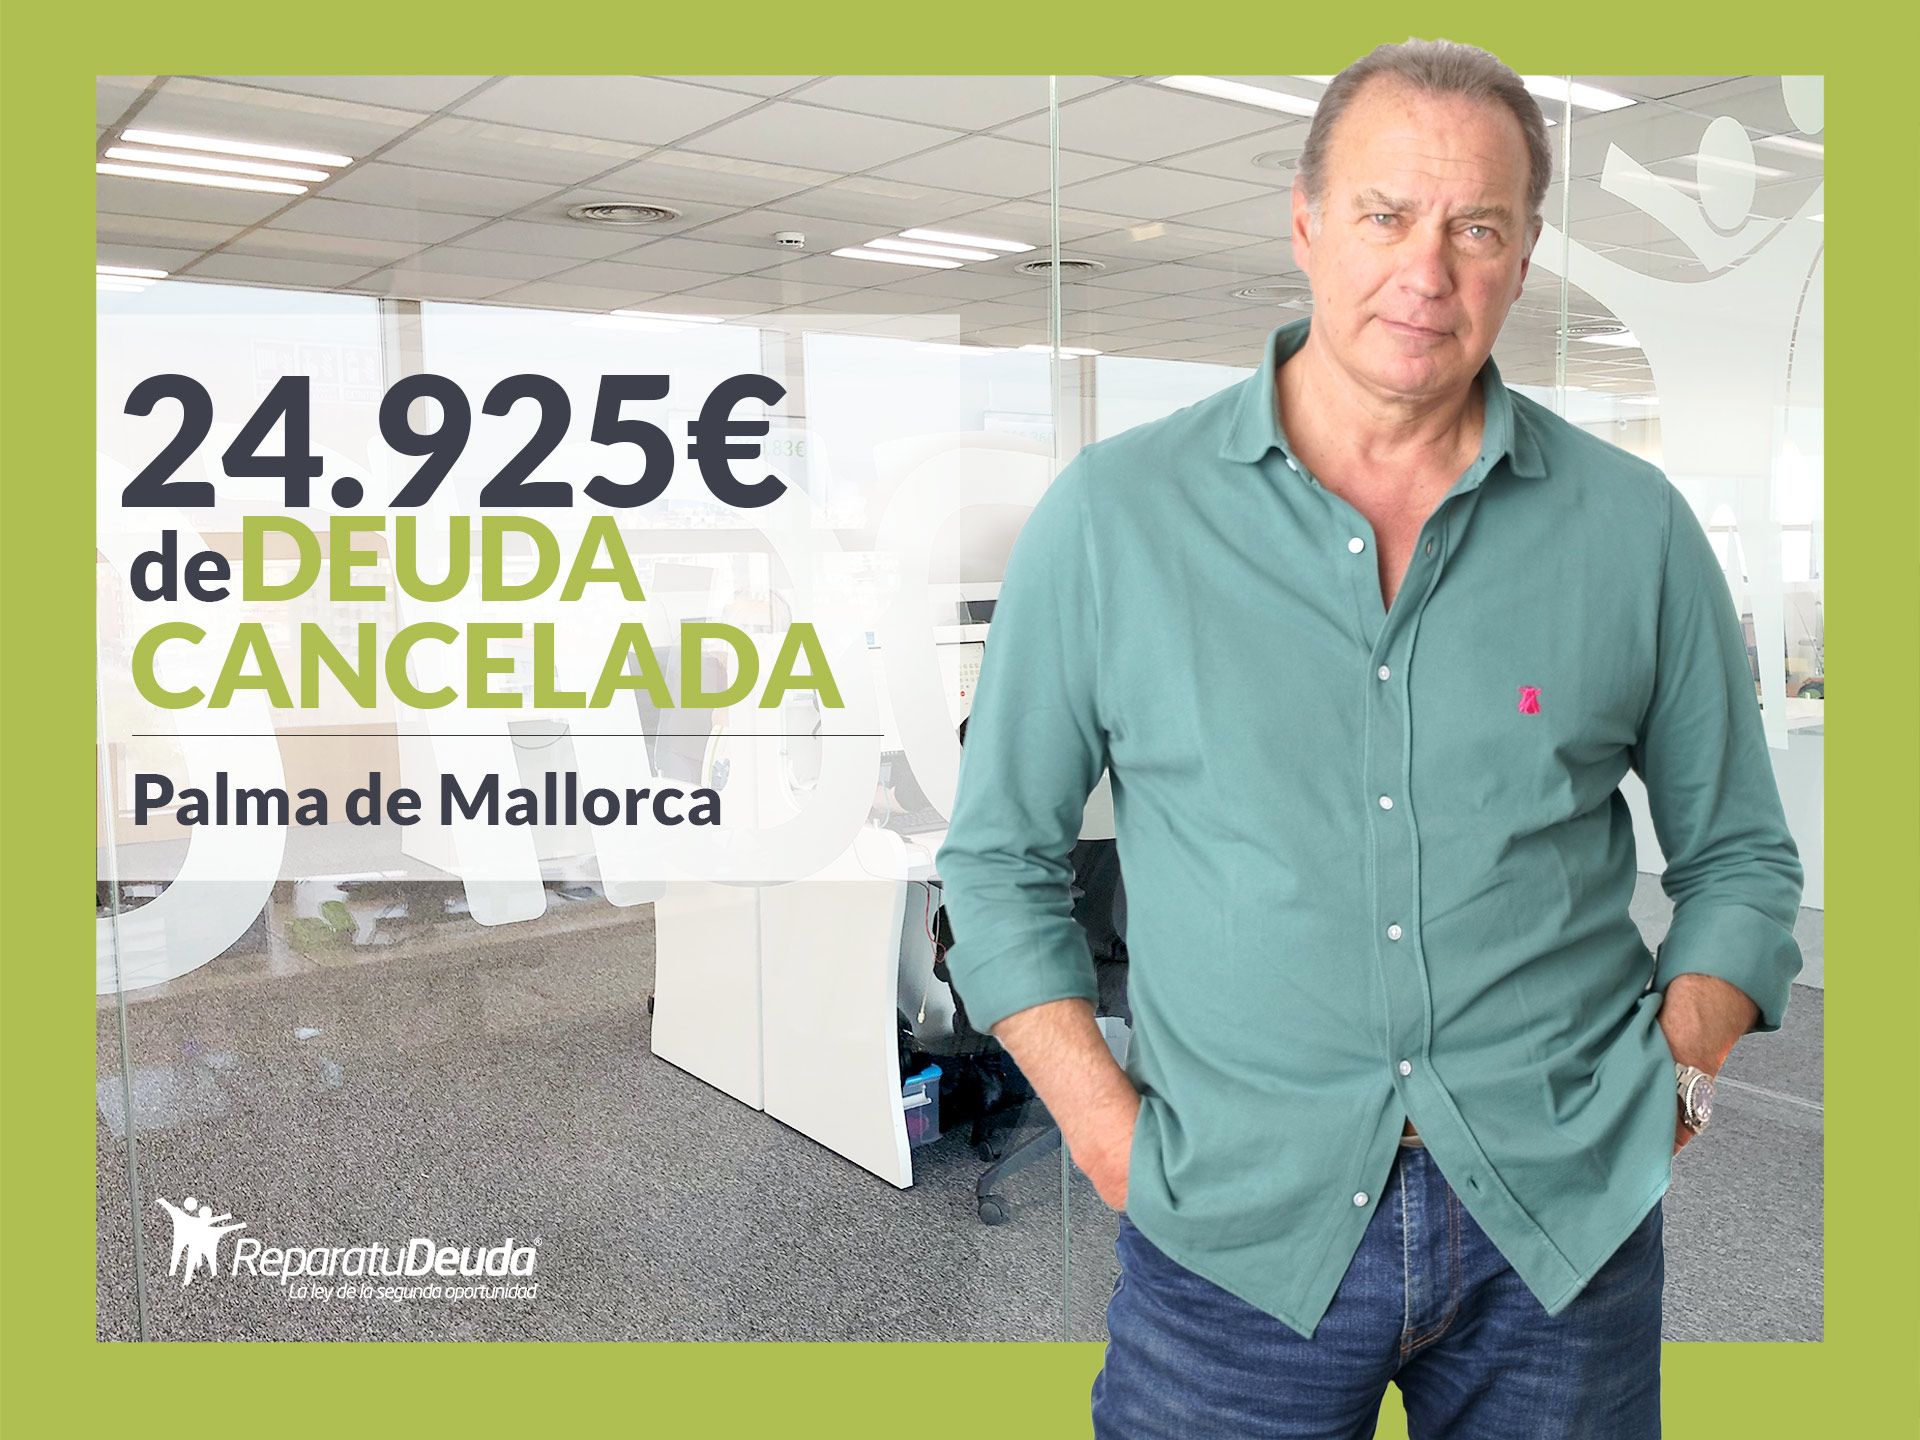 Repara tu Deuda Abogados cancela 24.925? en Palma de Mallorca (Baleares) con la Ley de Segunda Oportunidad